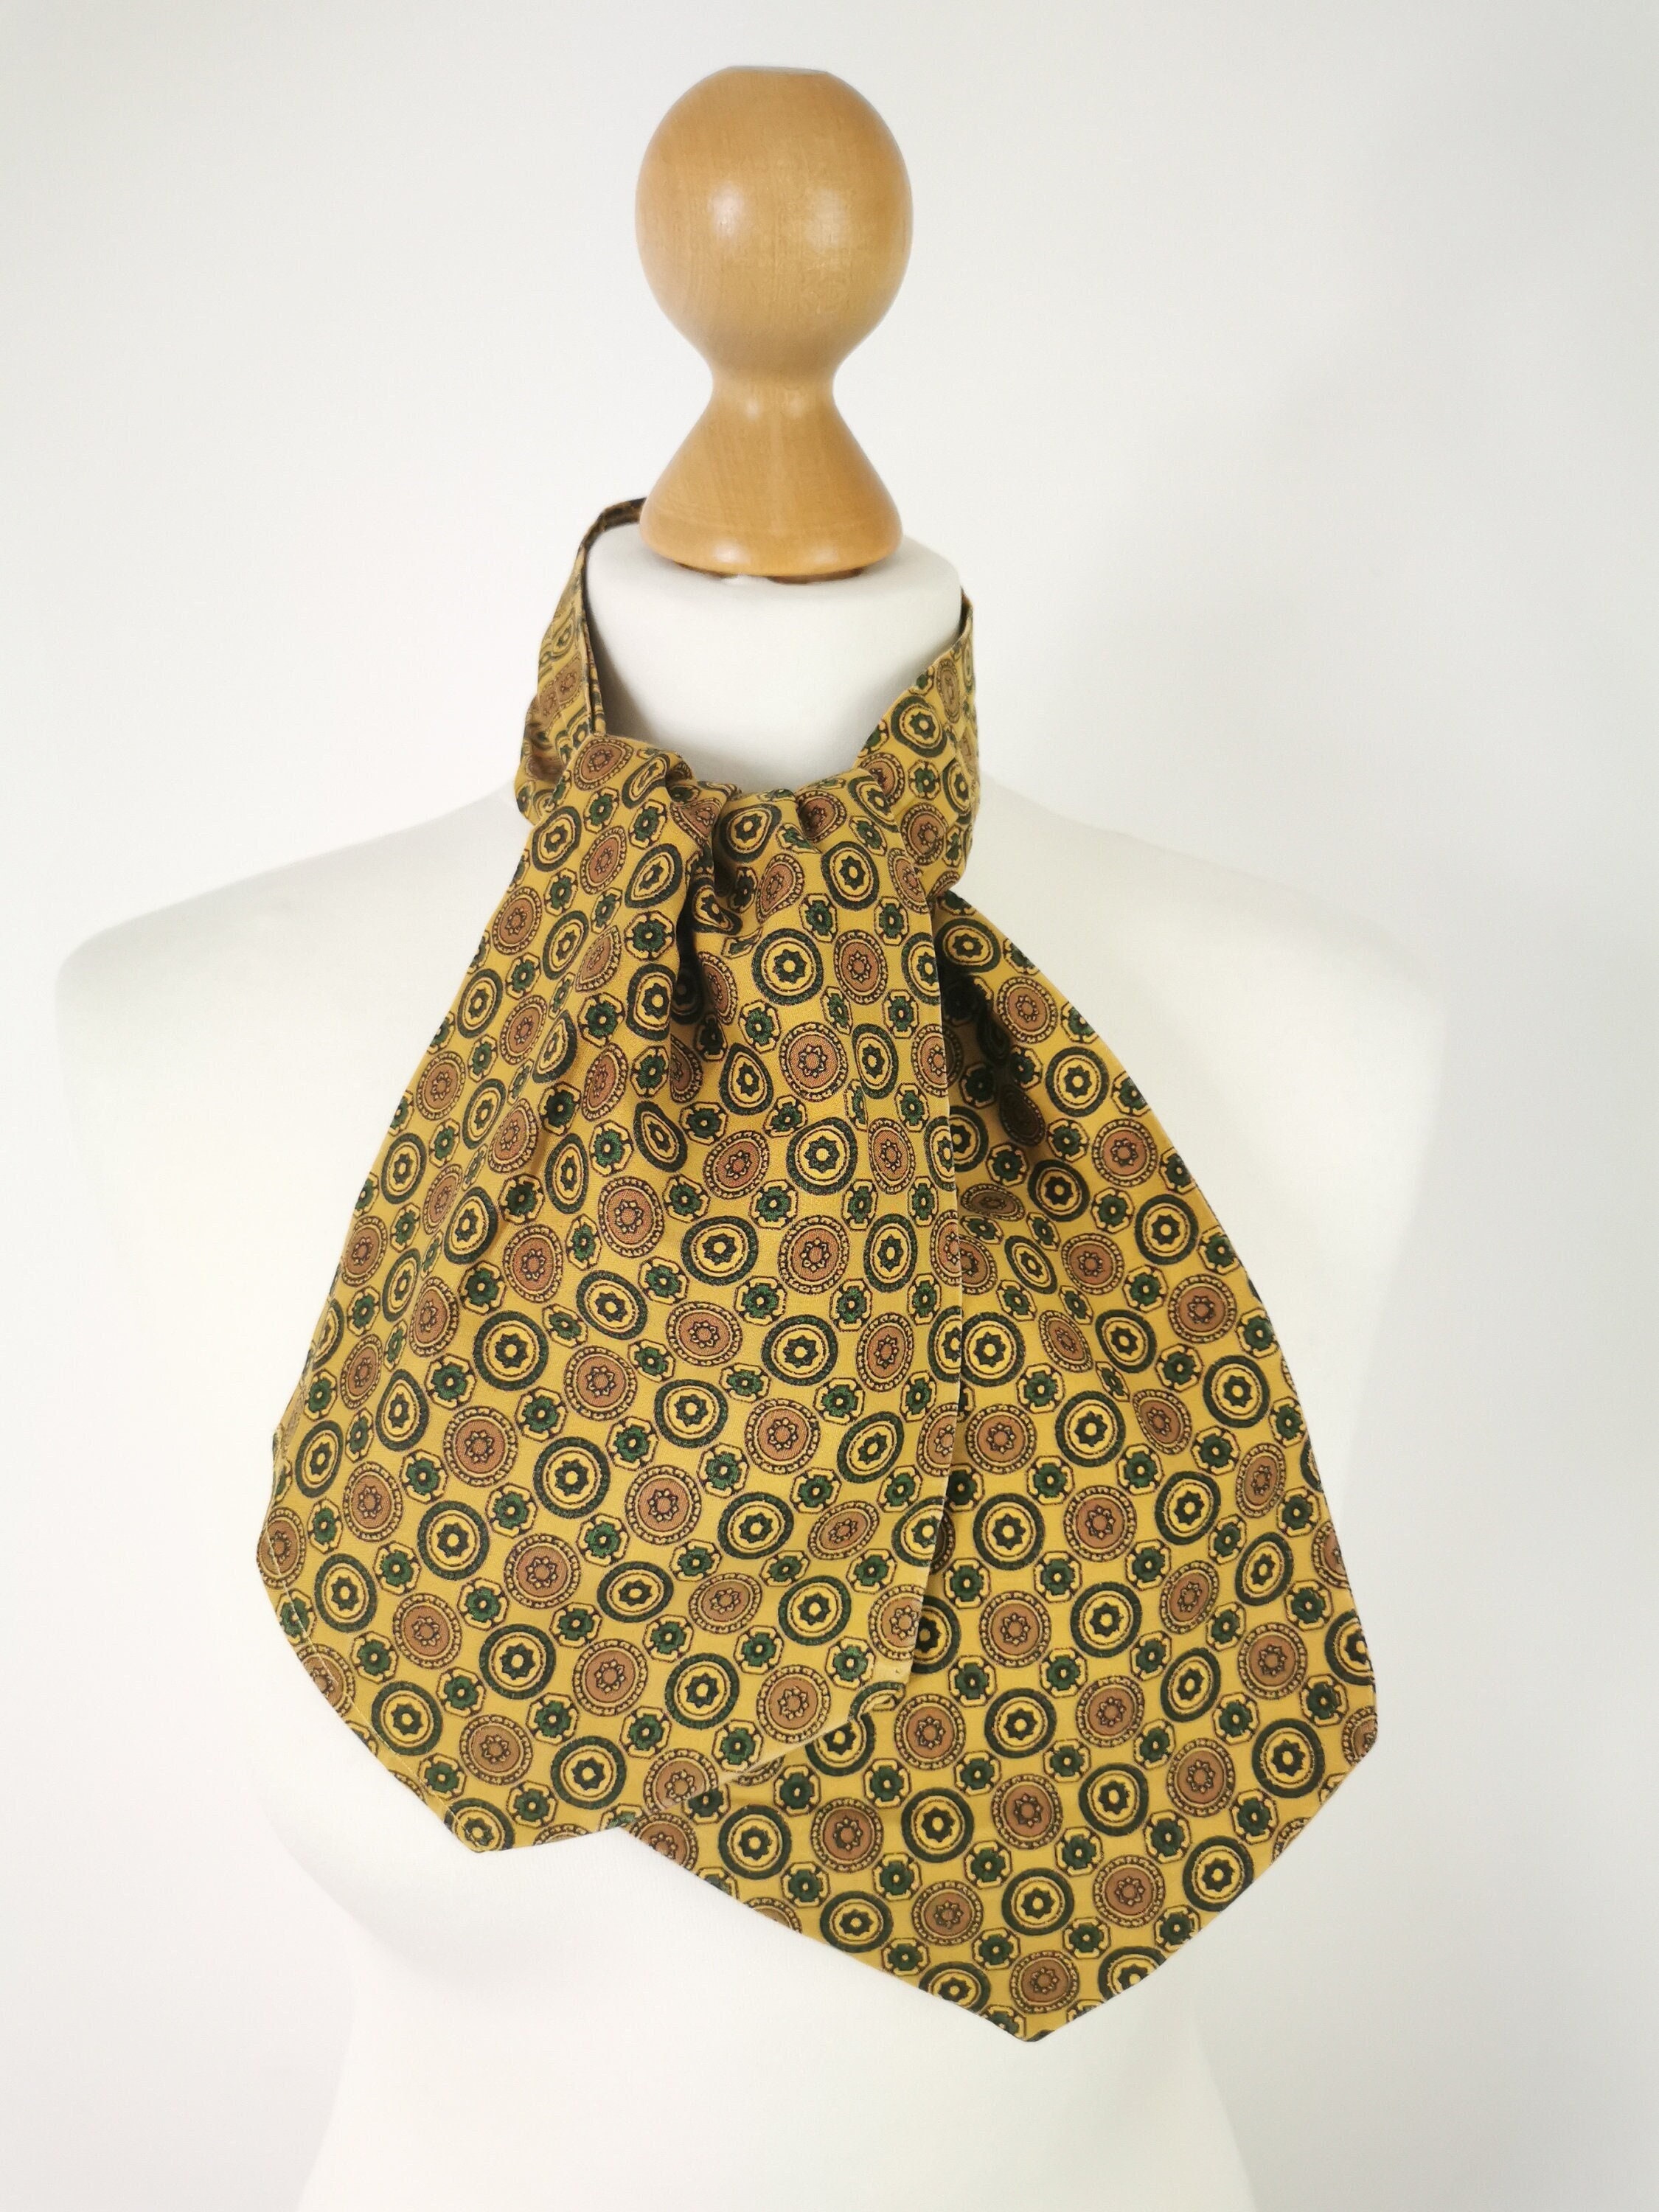 1940s Cotton Cravat Ascot Goodwood Revival Races Vintage Neck Tie Target Floral Style Print